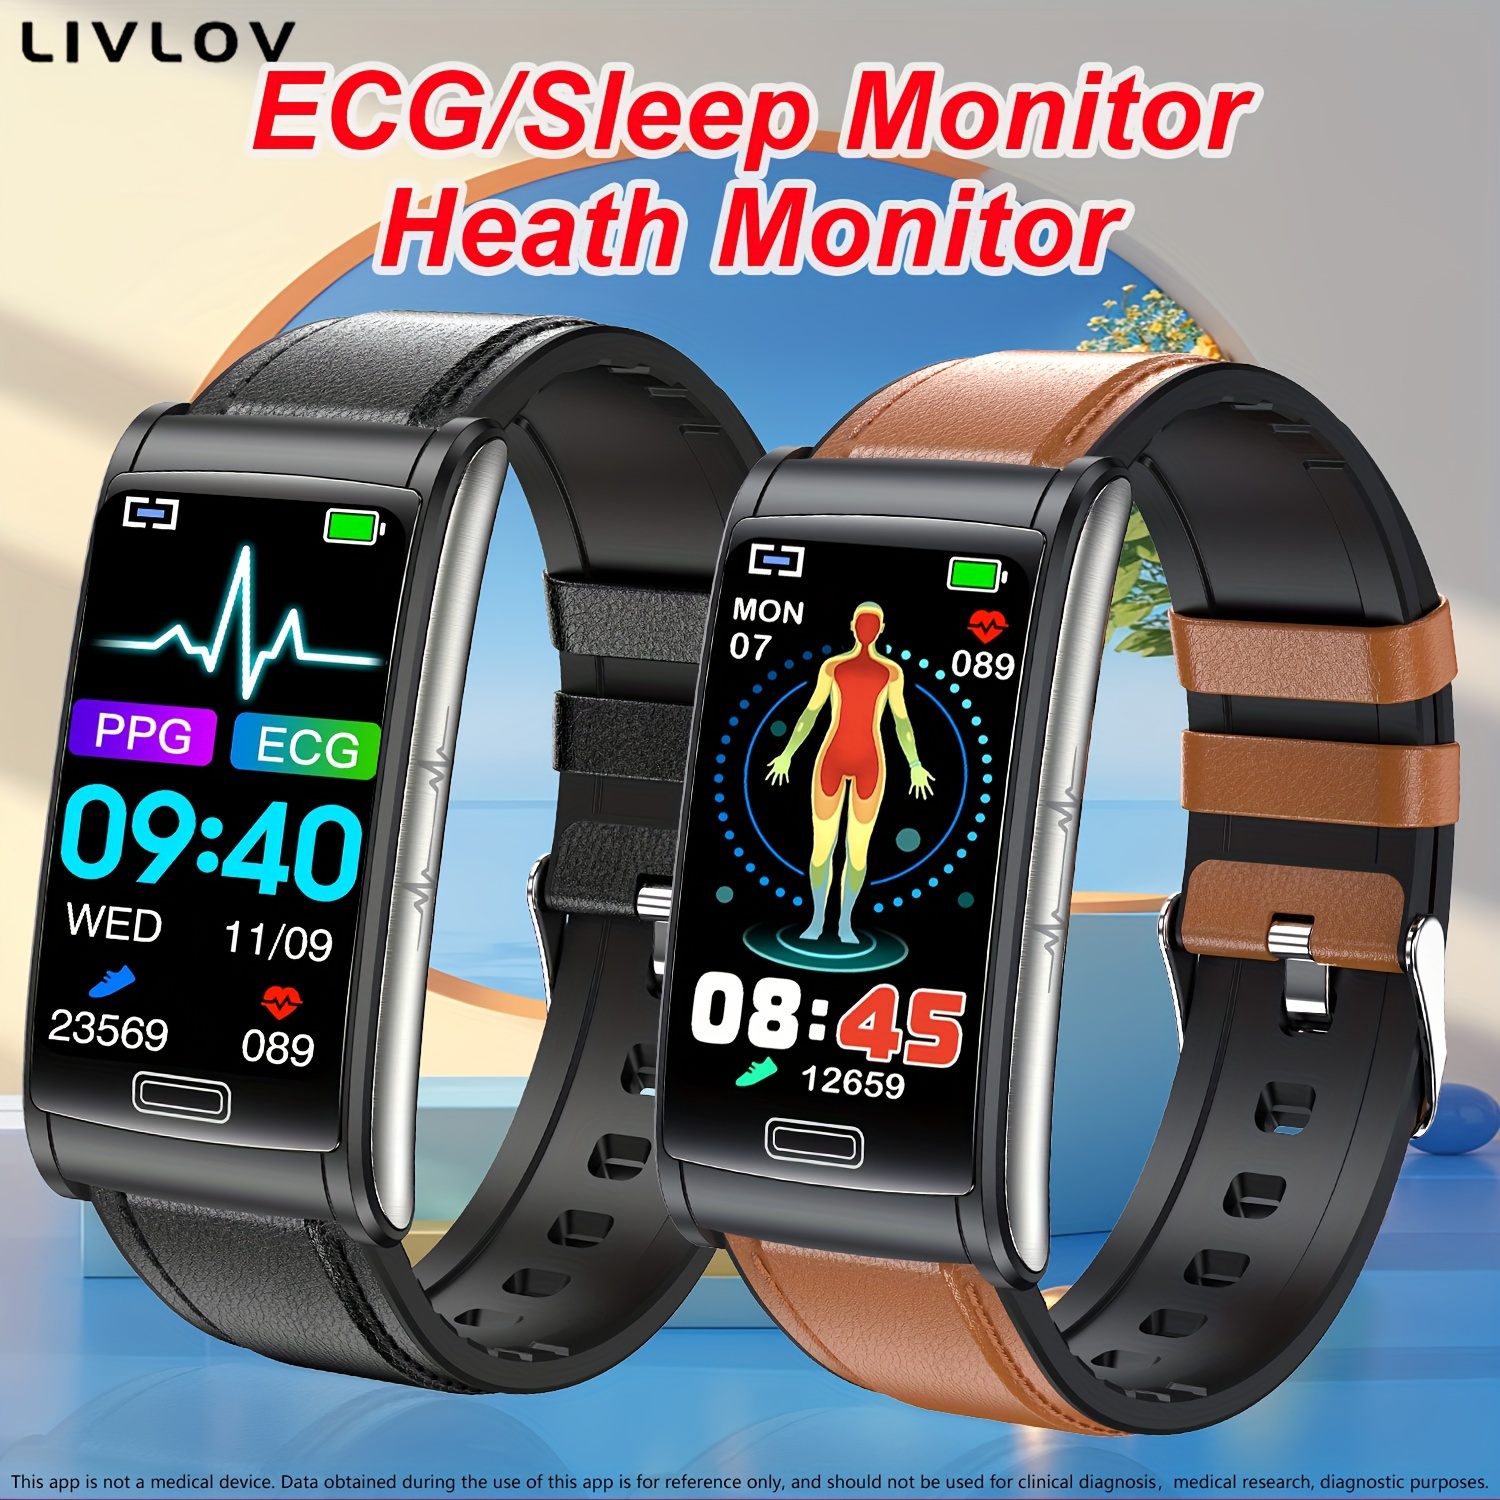 M6 - Reloj inteligente de fitness con contador de pasos, calorías,  cronómetro, monitor de frecuencia cardíaca, rastreador de sueño, reloj  inteligente